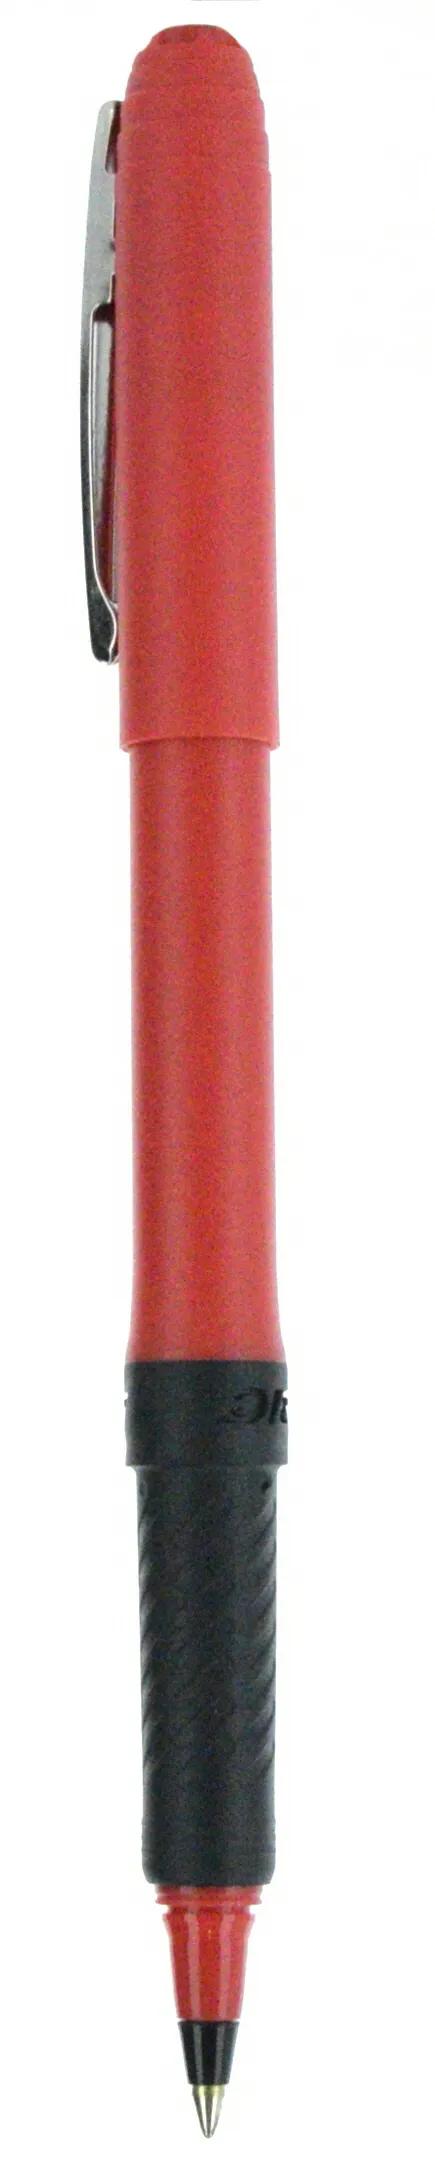 BIC® Grip Roller Pen 121 of 147